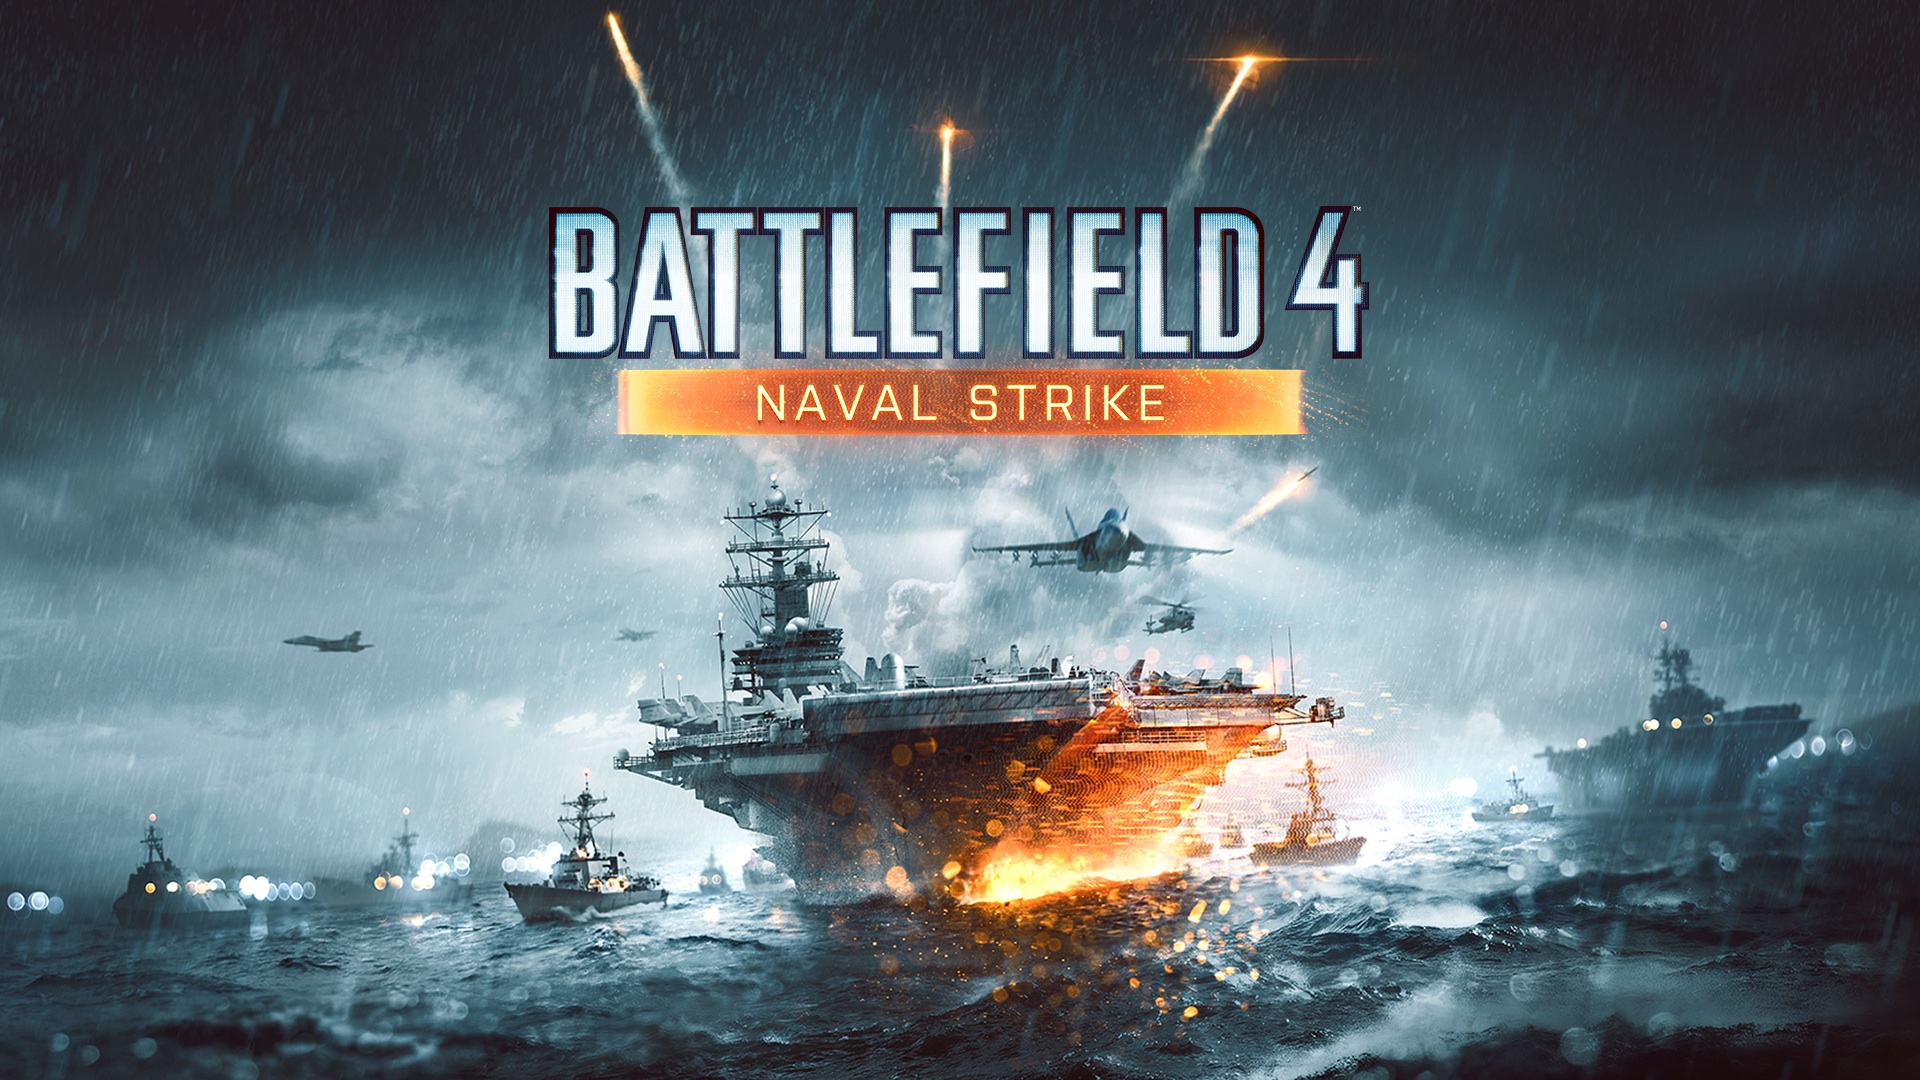 Battlefield 4 Naval Strike Erweiterung ab 25. März 2014 für Premium-Kunden verfügbar